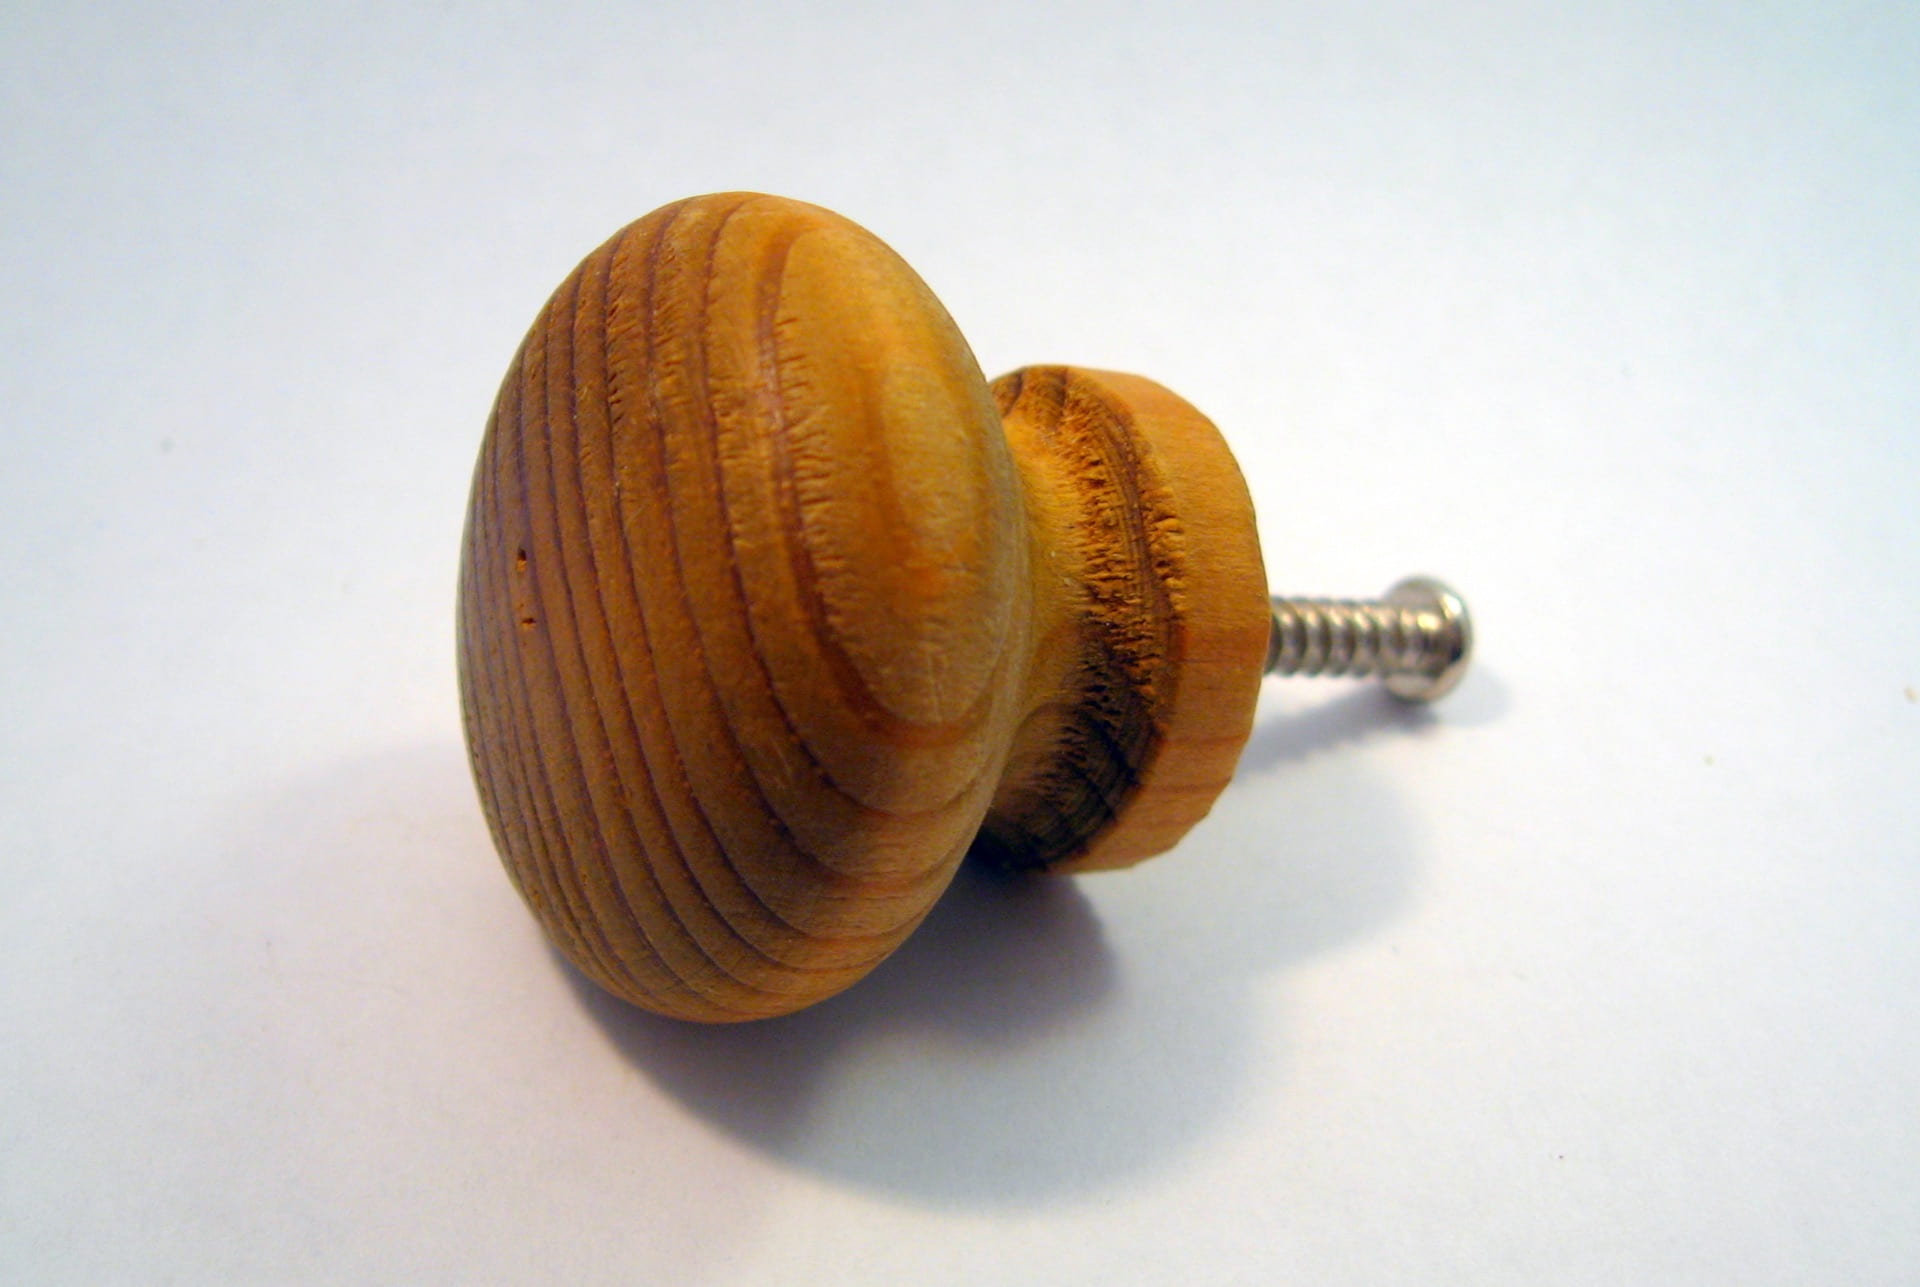 Image of wooden dresser knob